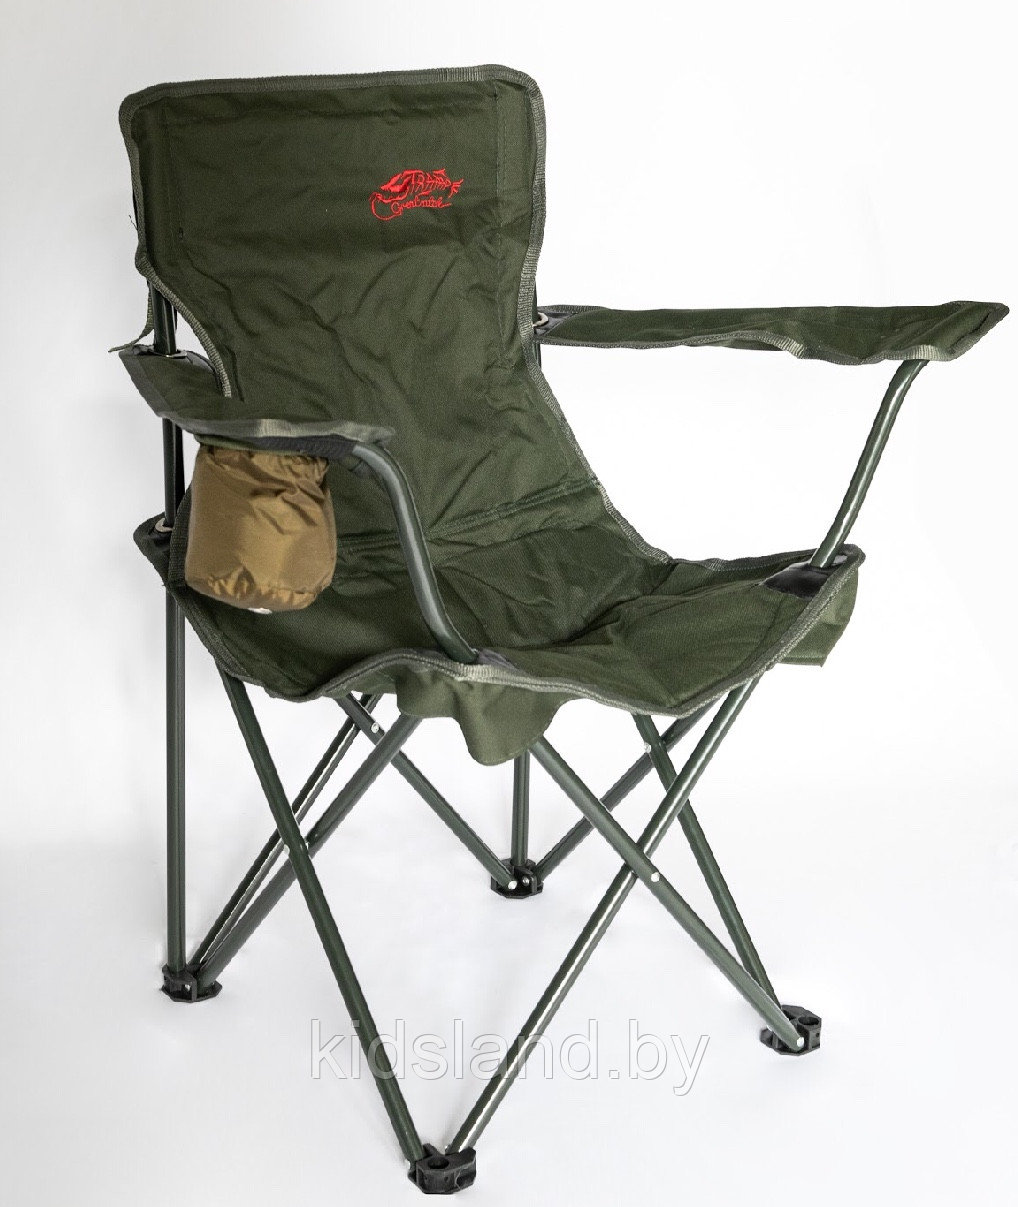 Кресло карповое, фидерное, складное, туристическое, для рыбалки Tramp Standard, фото 1